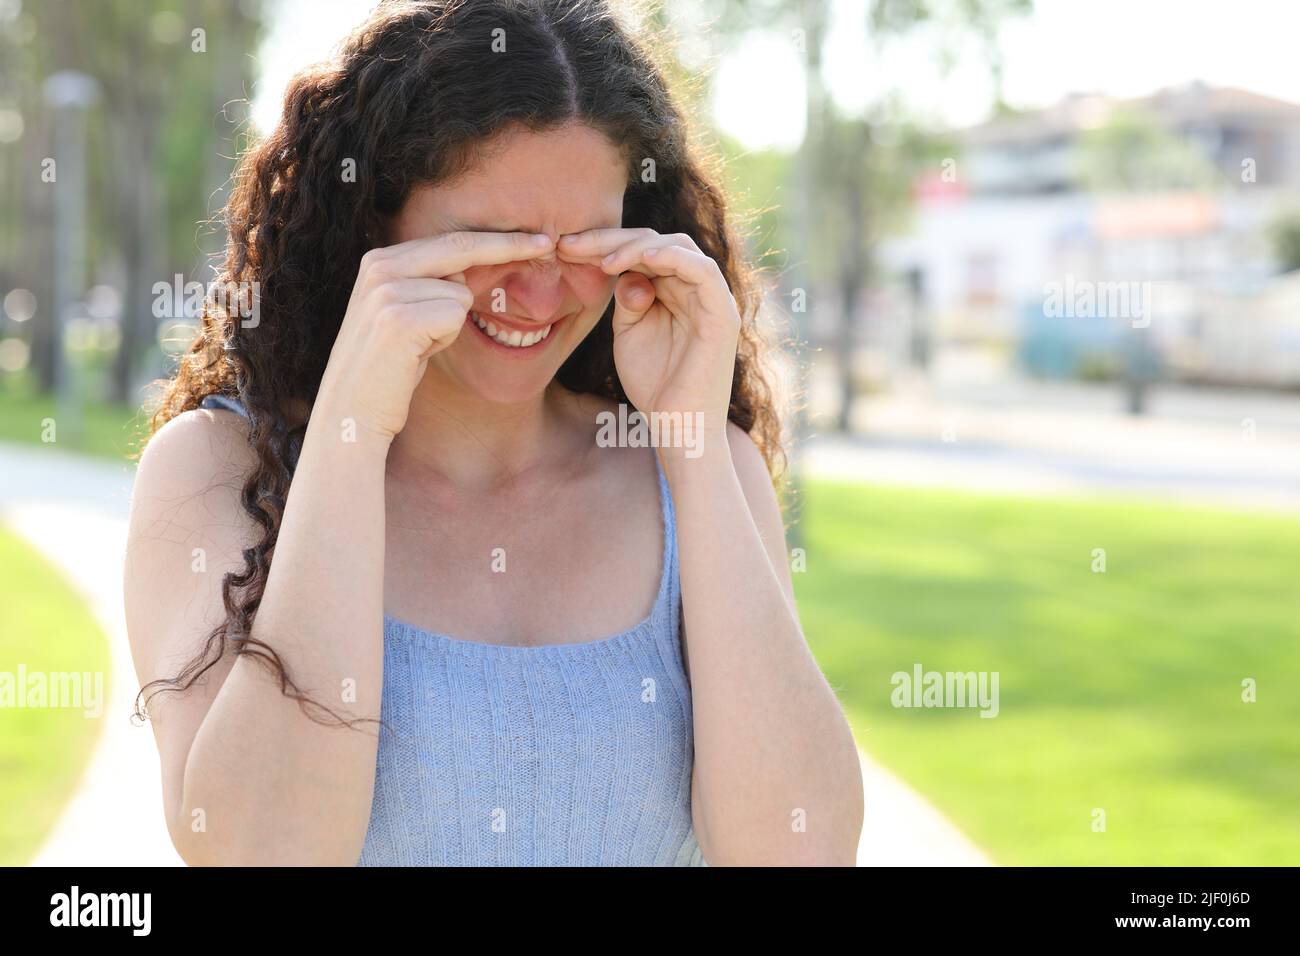 Femme stressée en se grattant les yeux pendant qu'elle marche dans un parc Banque D'Images